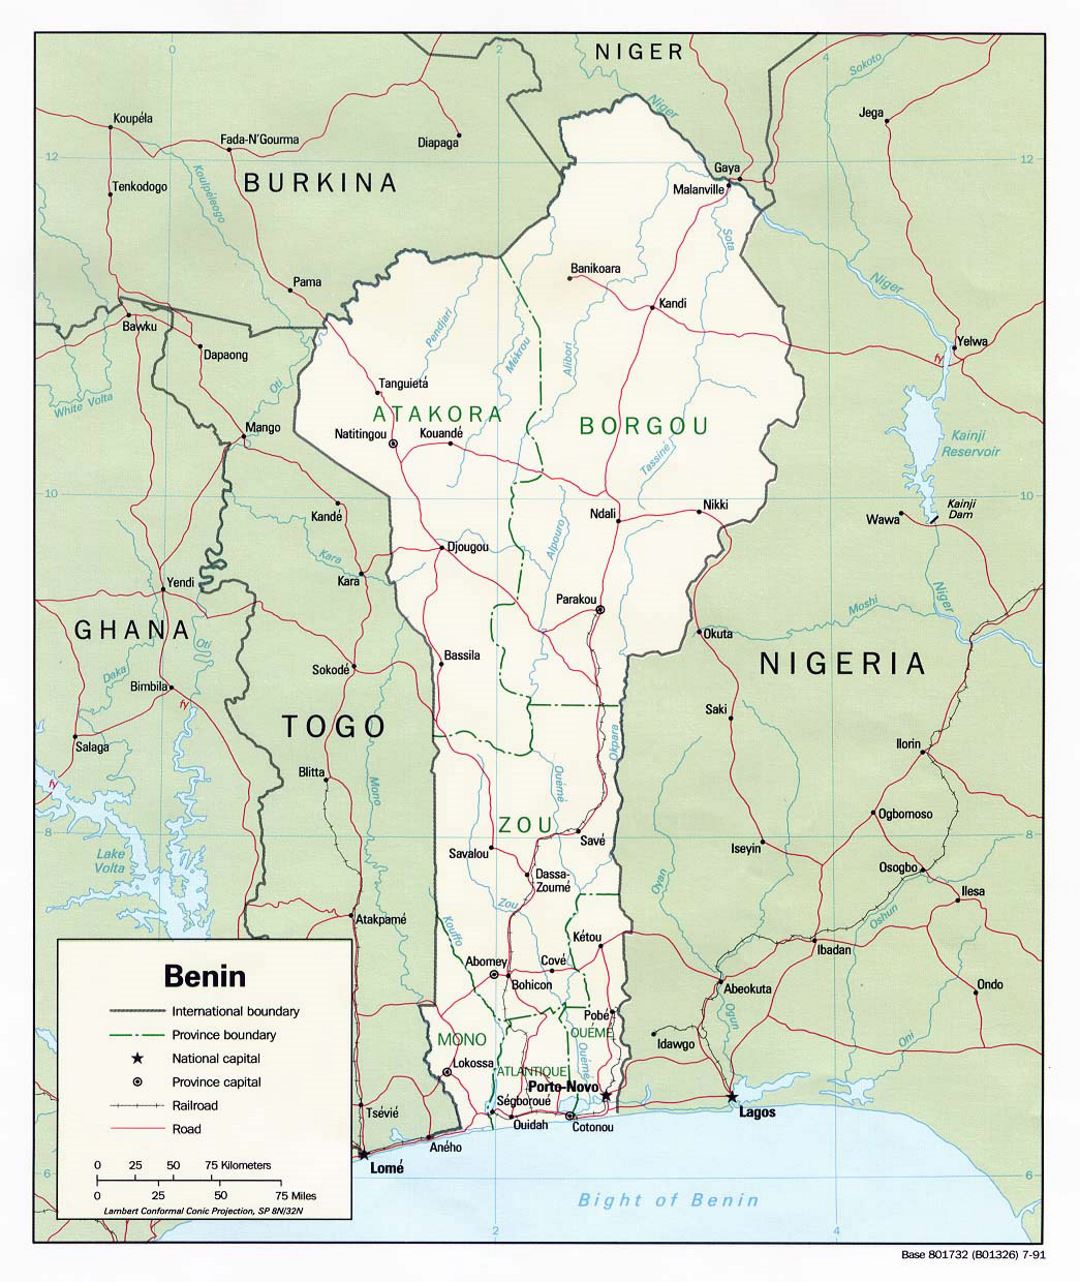 Детальная политическая и административная карта Бенина с дорогами, железными дорогами и крупными городами - 1991